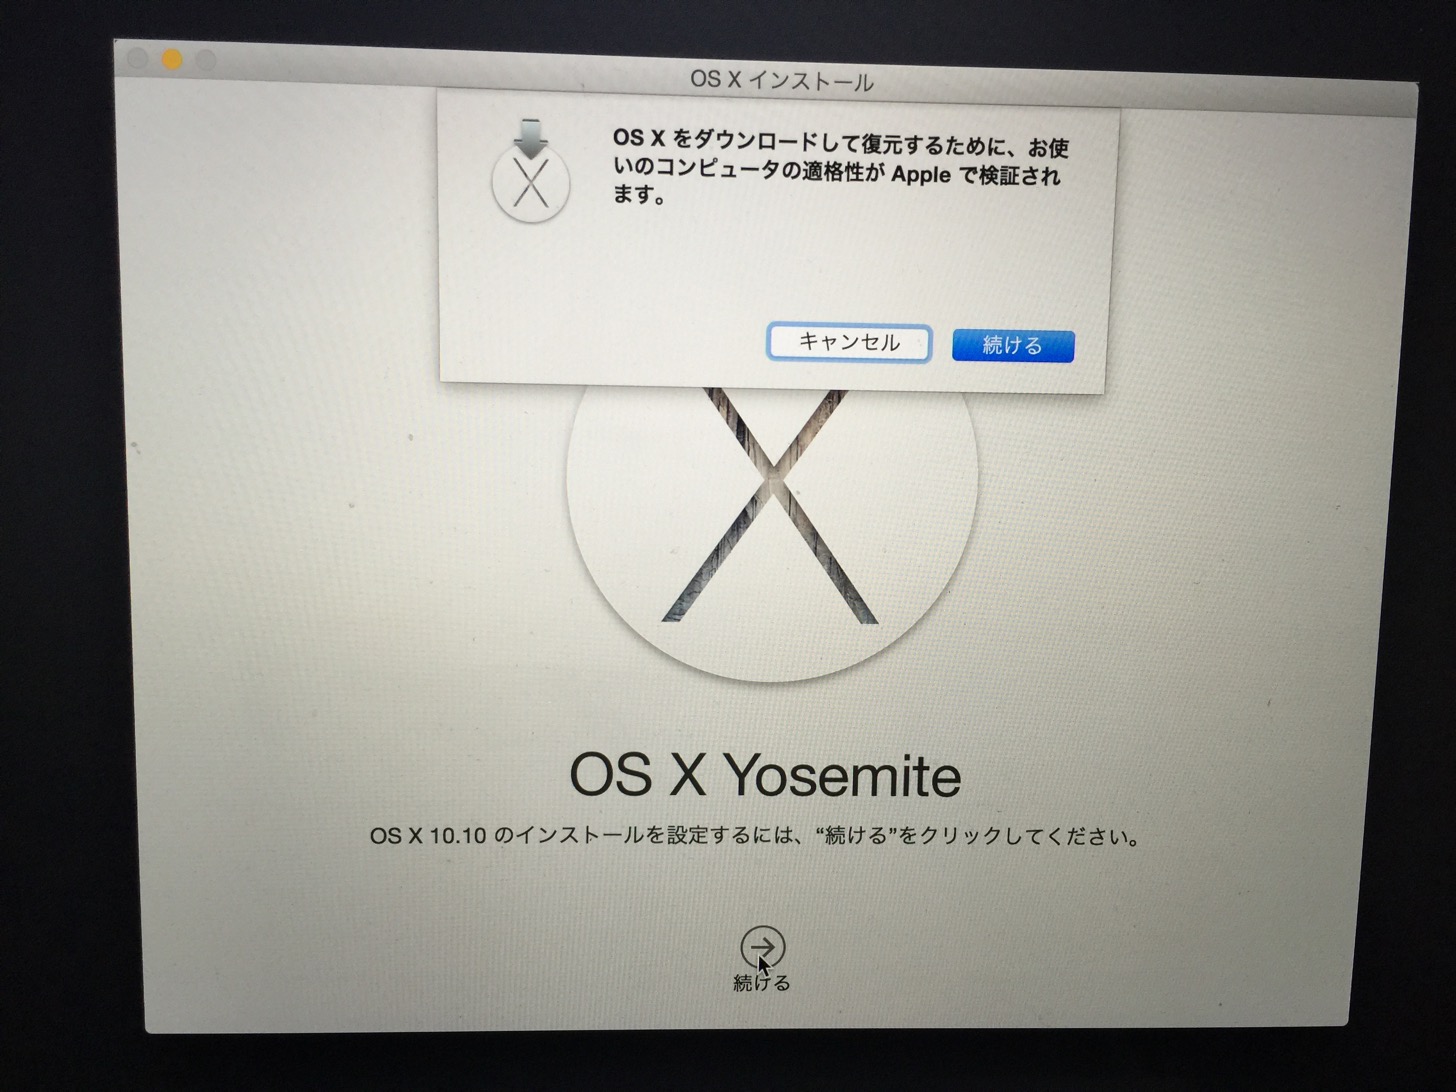 OS Xをダウンロードして復元するために、お使いのコンピュータの適格性がAppleで検証されます。